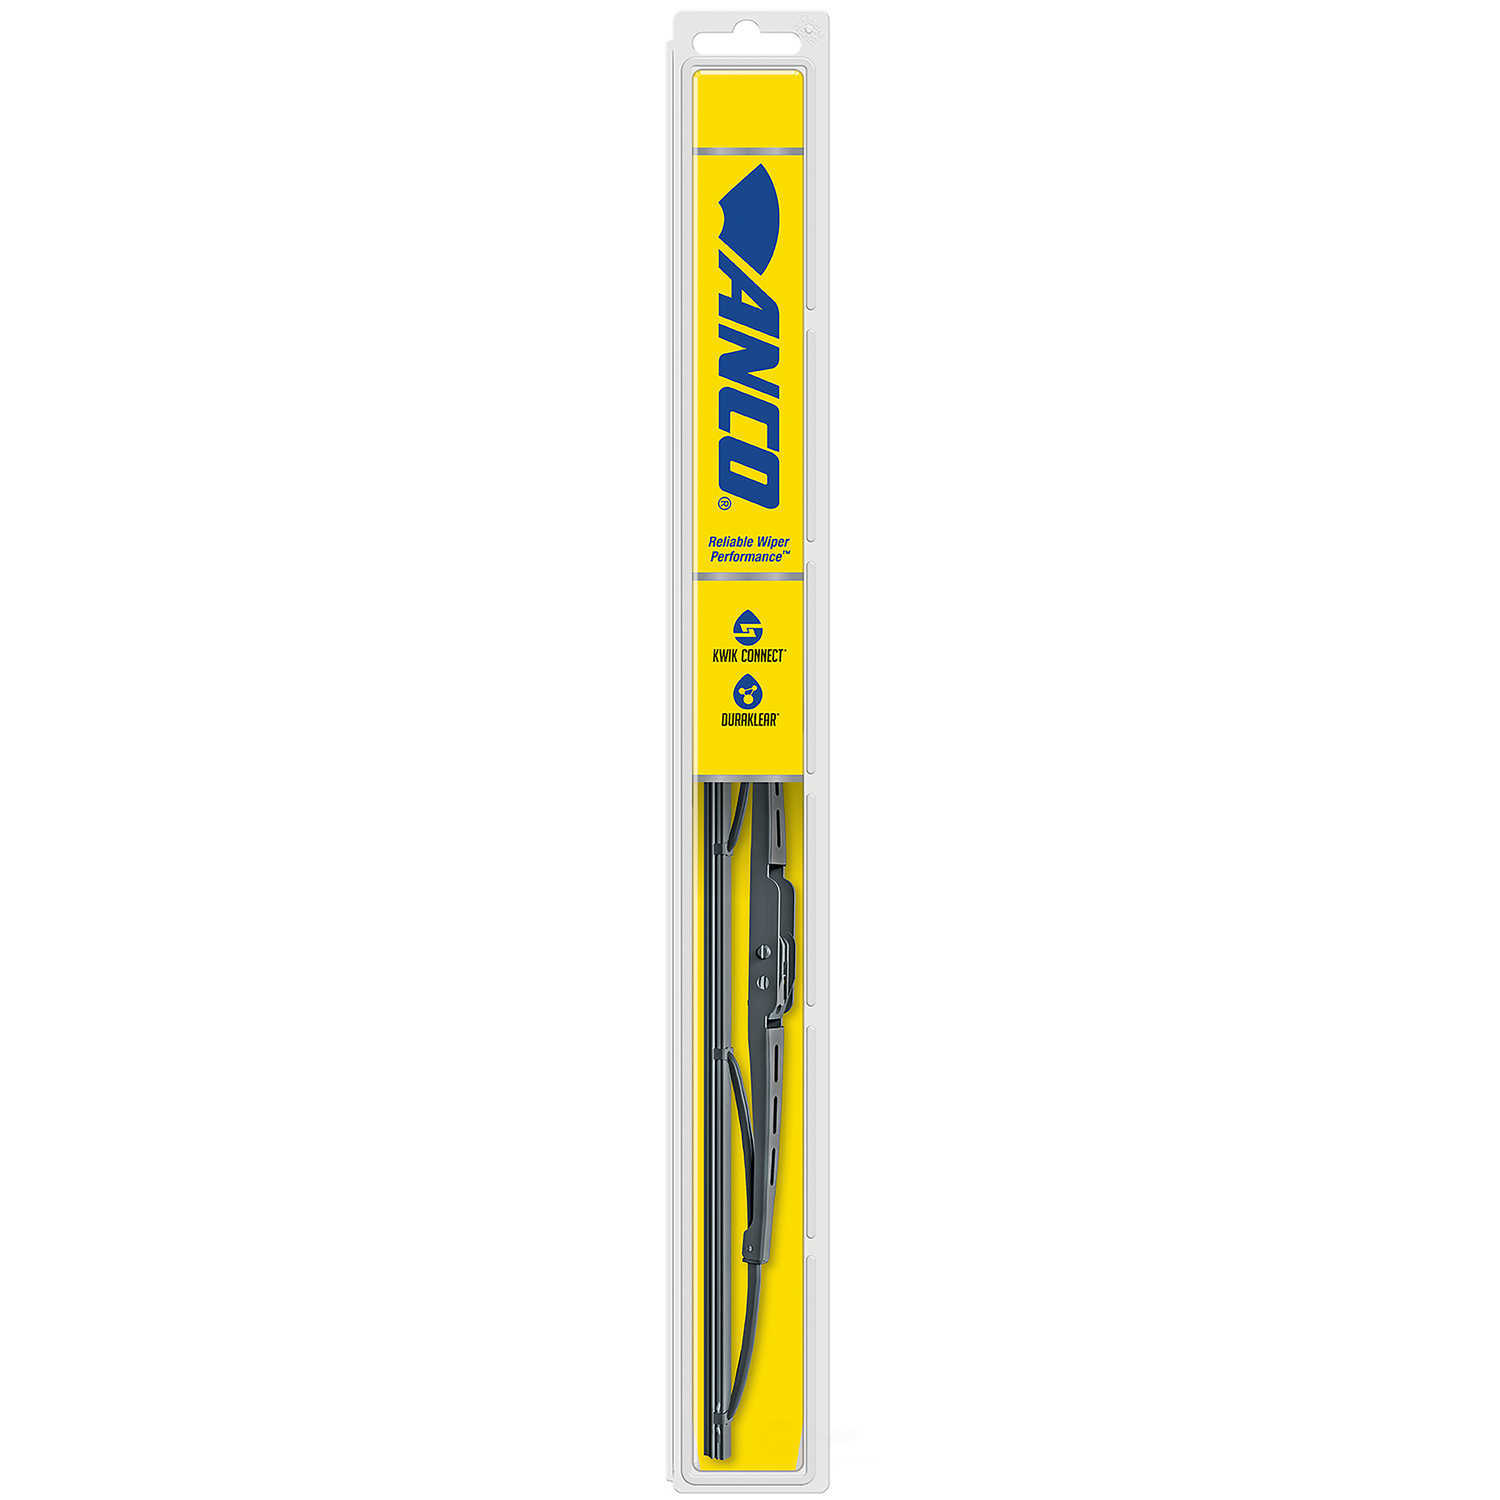 ANCO WIPER PRODUCTS - ANCO 31-Series Wiper Blade - ANC 31-19